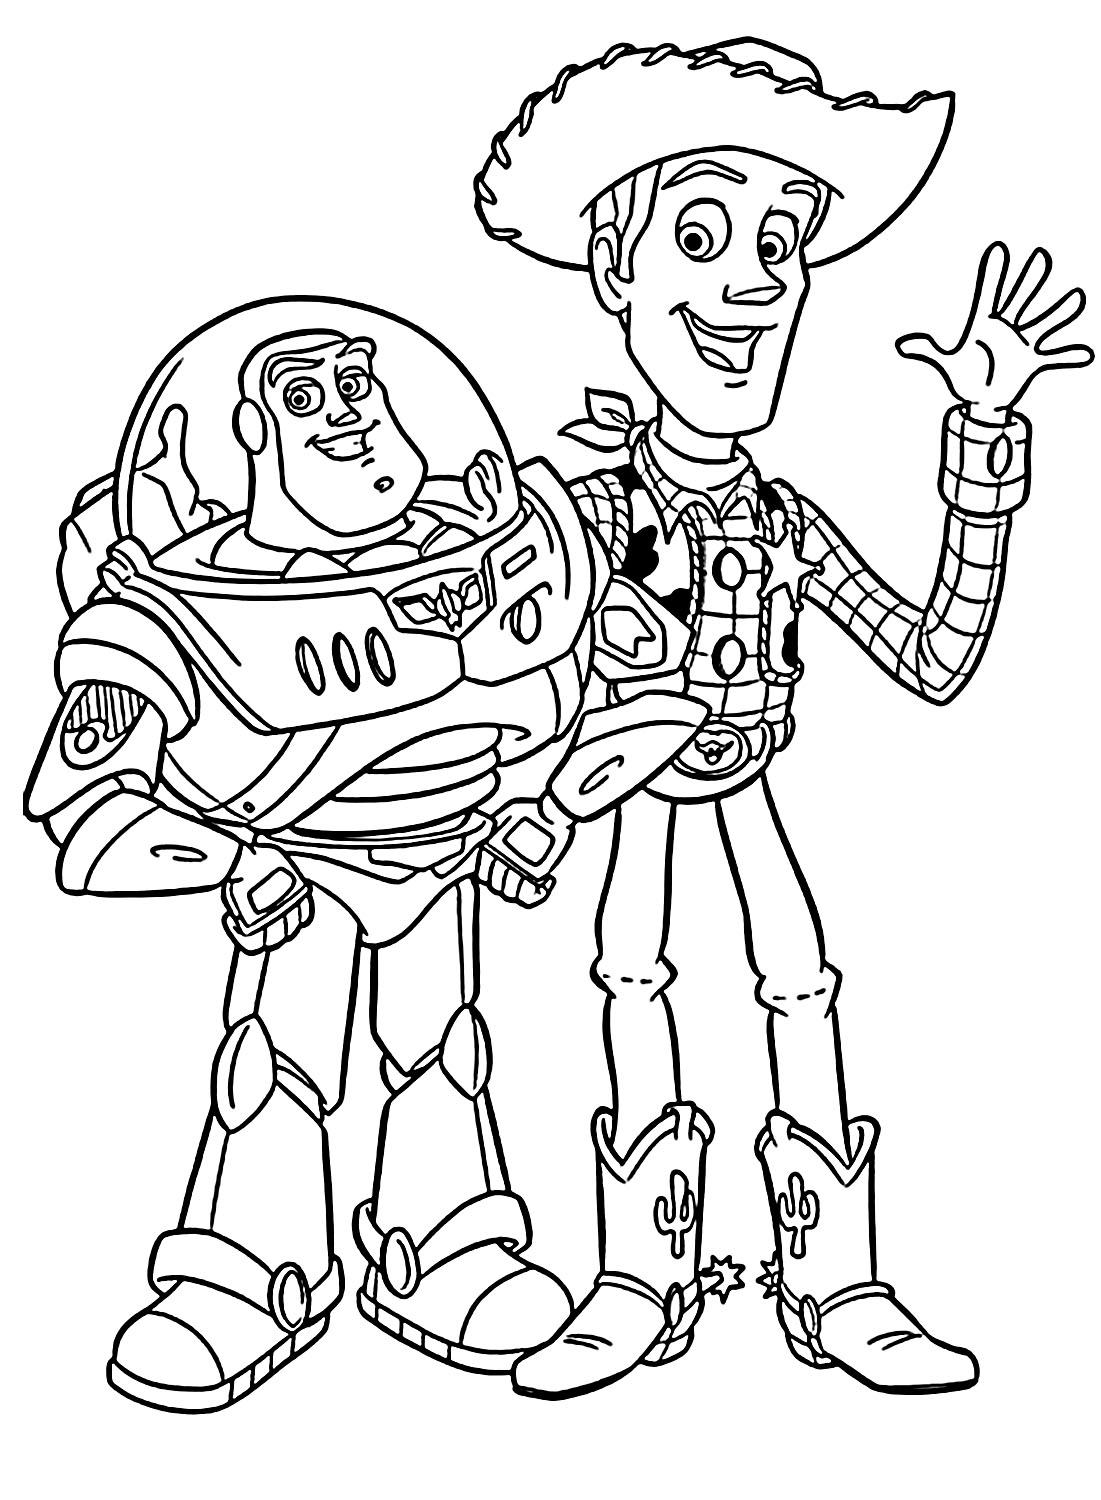 Woody y Buzz de Toy Story